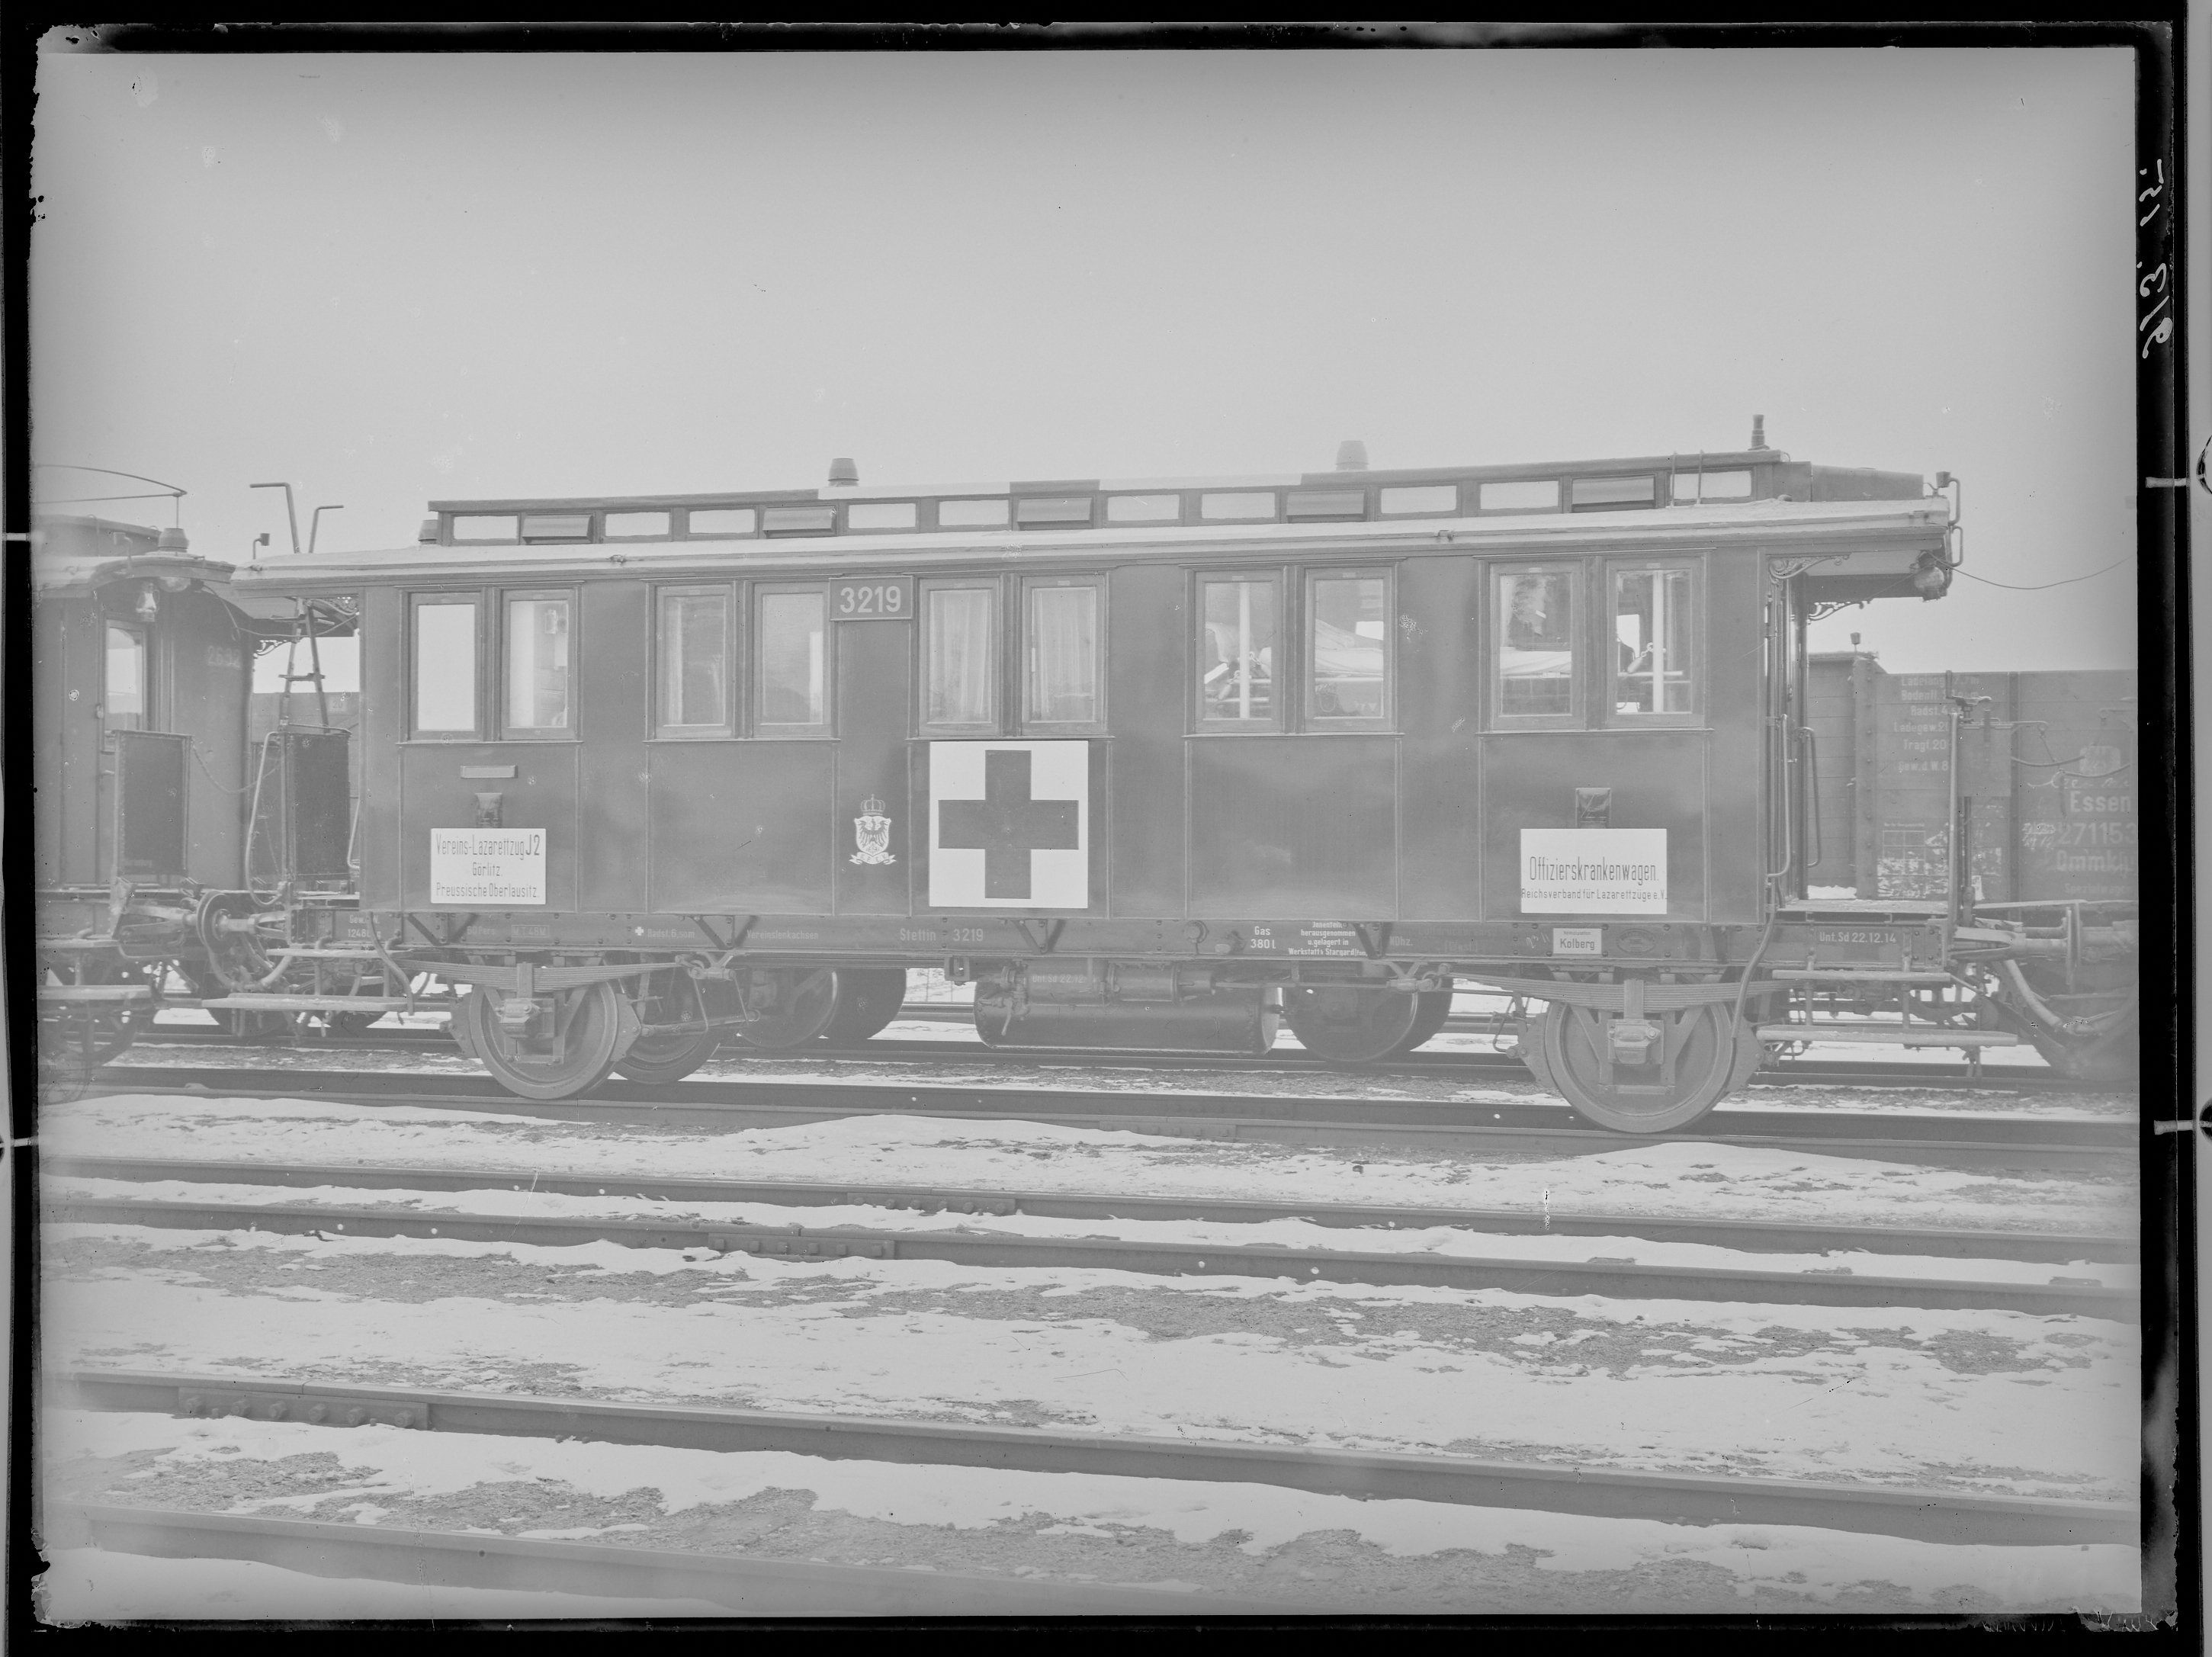 Fotografie: Vereinslazarettzug "J2 Görlitz Preußische Oberlausitz" (Innenansicht), zweiachsiger Offizierskrankenwagen, 1915. (Verkehrsmuseum Dresden CC BY-NC-SA)